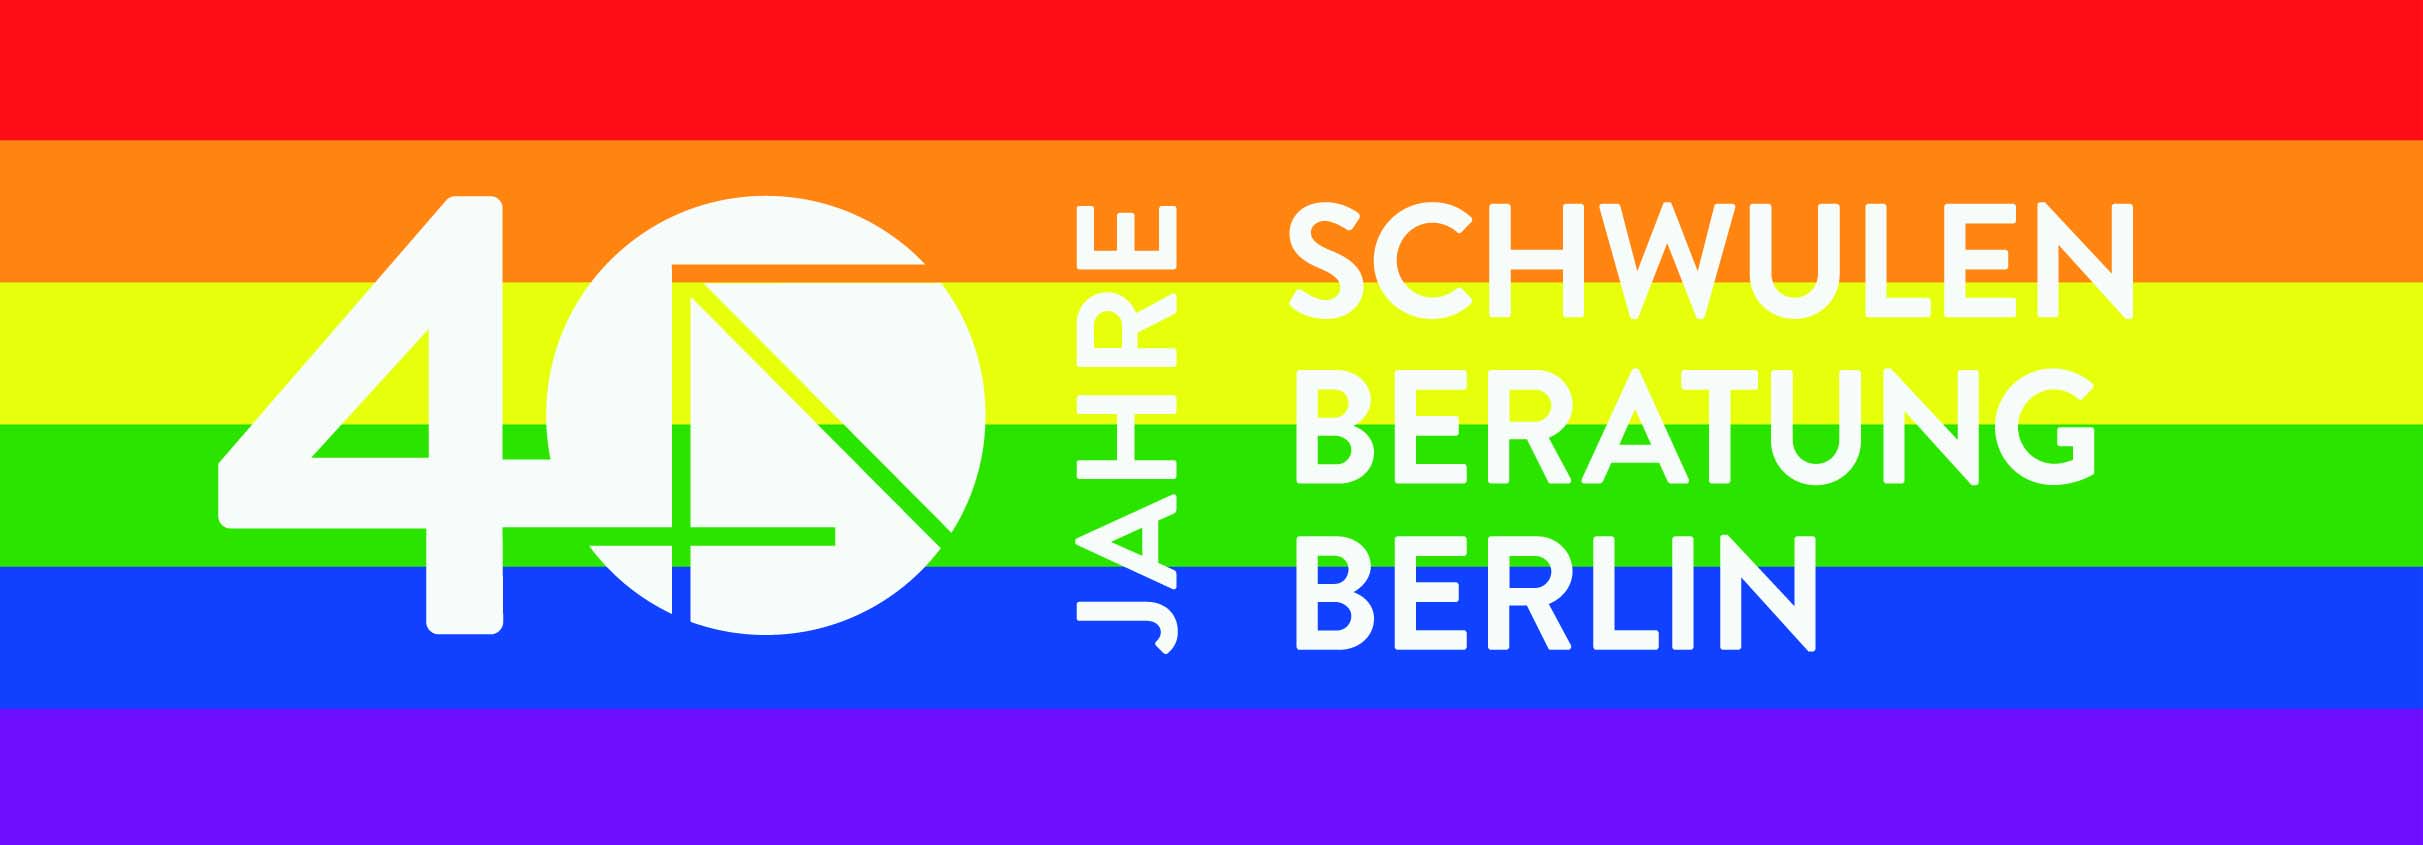 Logo 40 Jahre Schwulenberatung Berlin auf der Regenbogenflagge